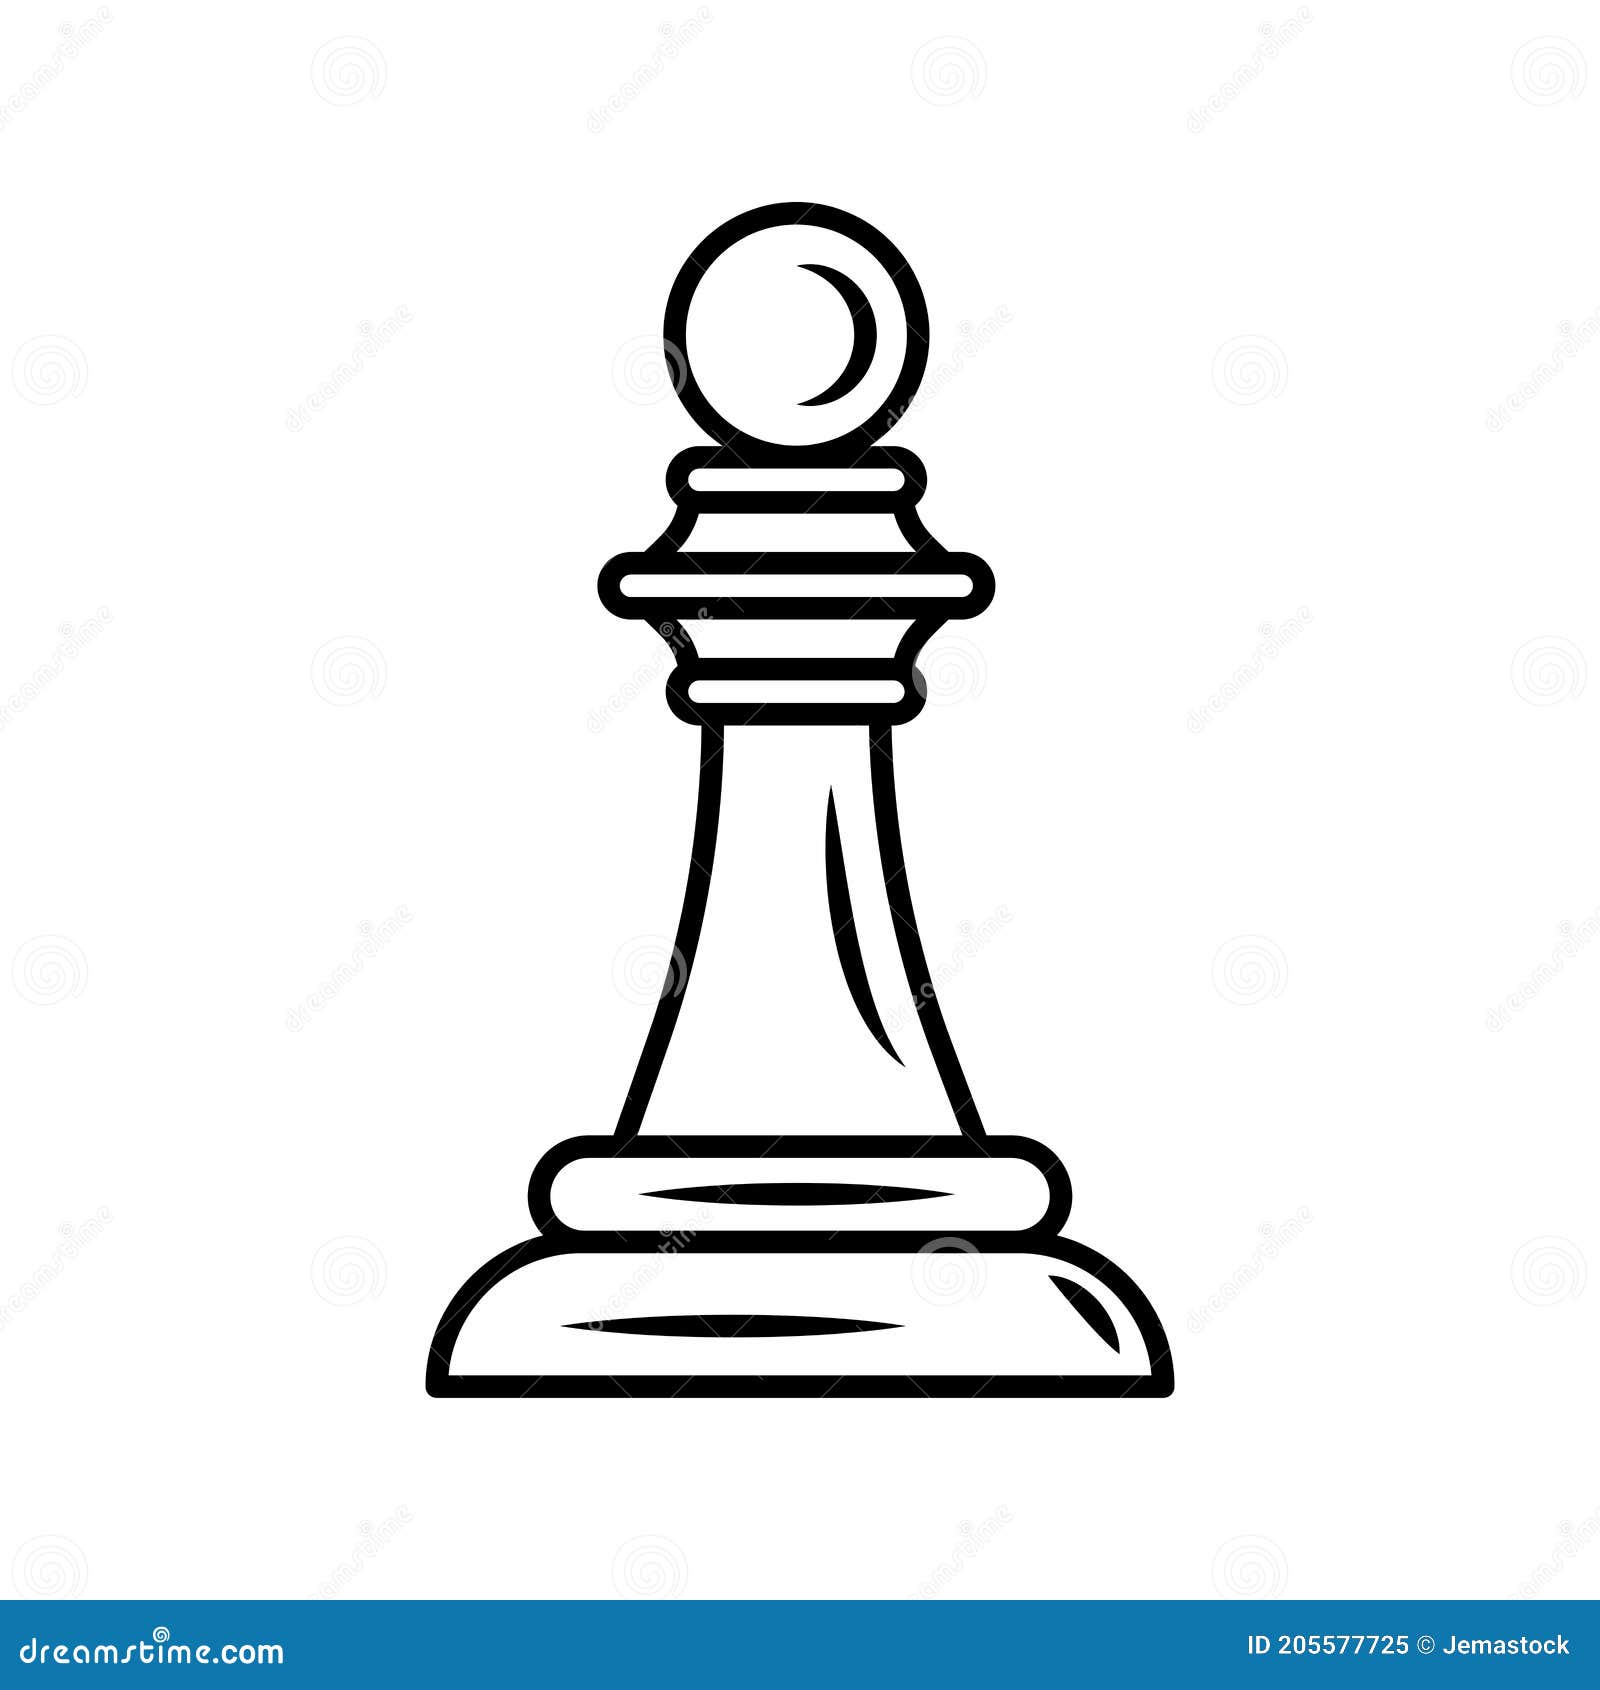 Pin on peça de xadrez desenho